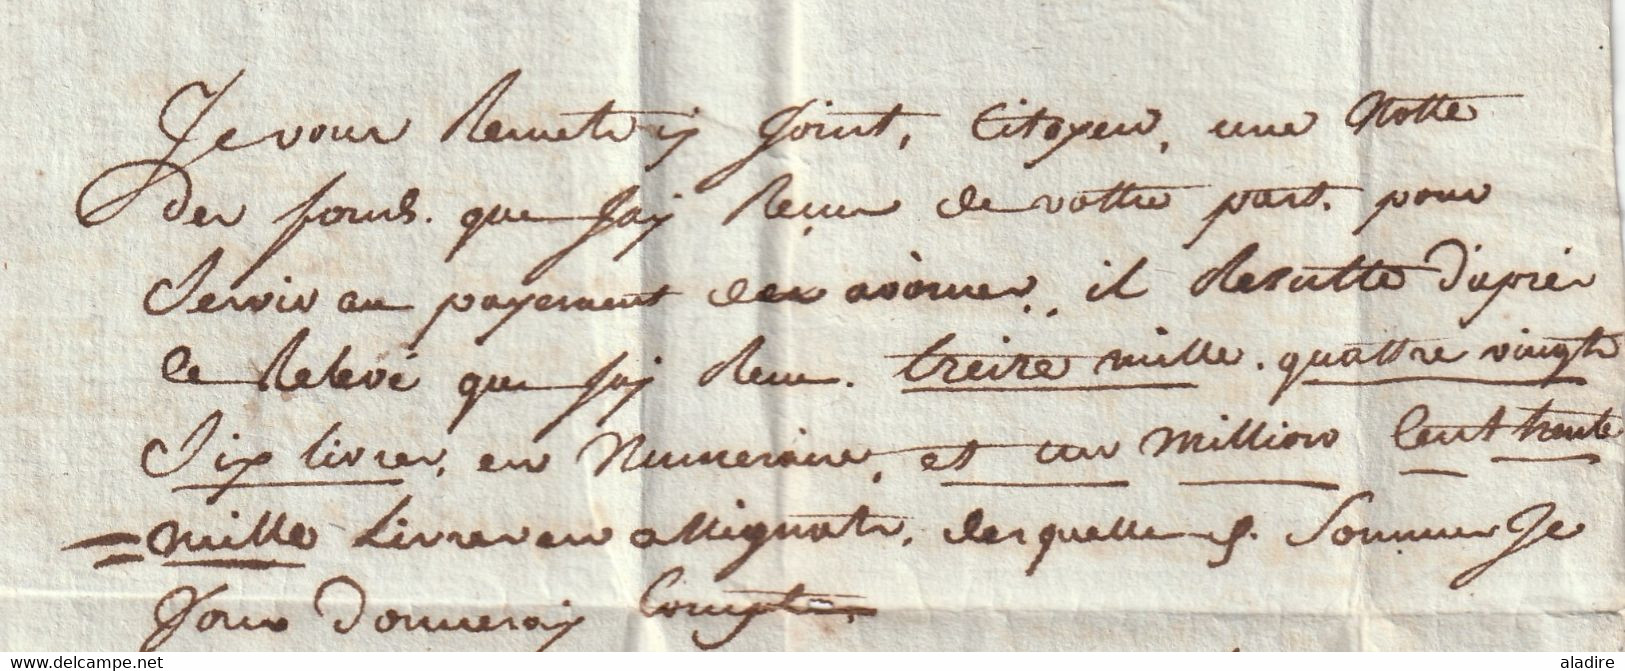 An 3 - 5e j compl - 1795 - Marque postale 10 CARCASSONNE sur LAC de 2 pages vers TOULOUSE - Convention Nationale